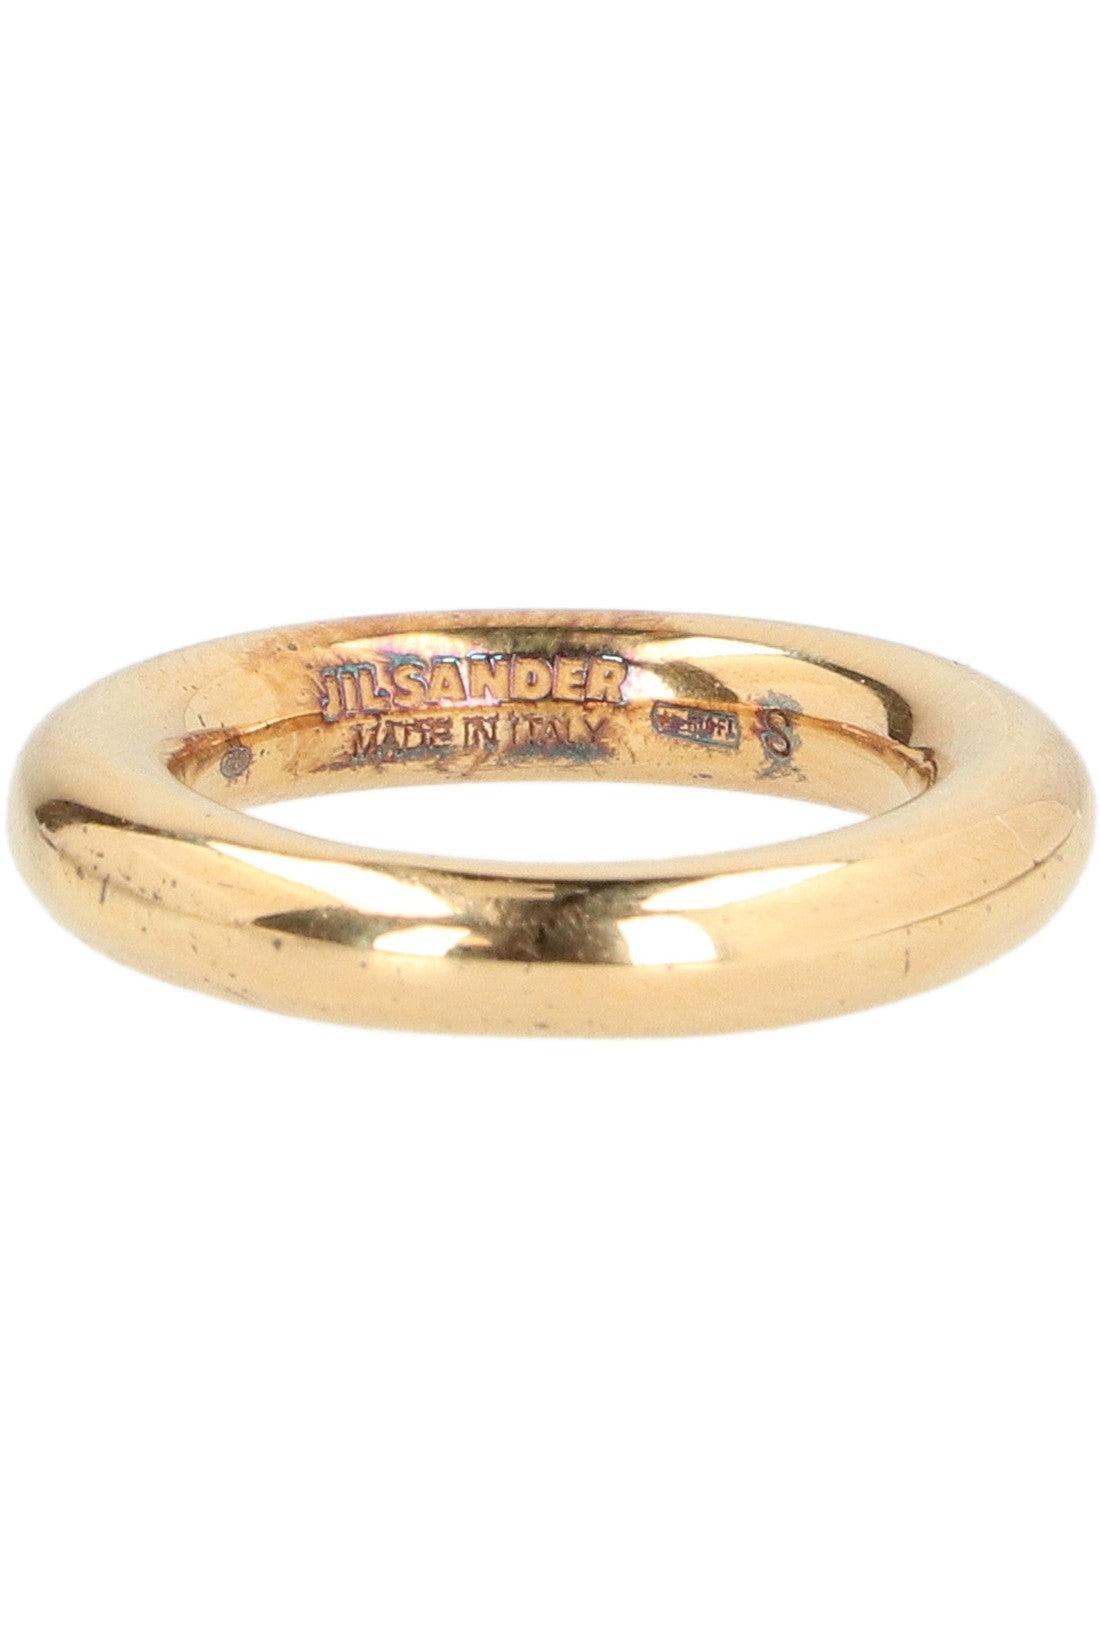 Jil Sander-OUTLET-SALE-Gold plated metal ring-ARCHIVIST